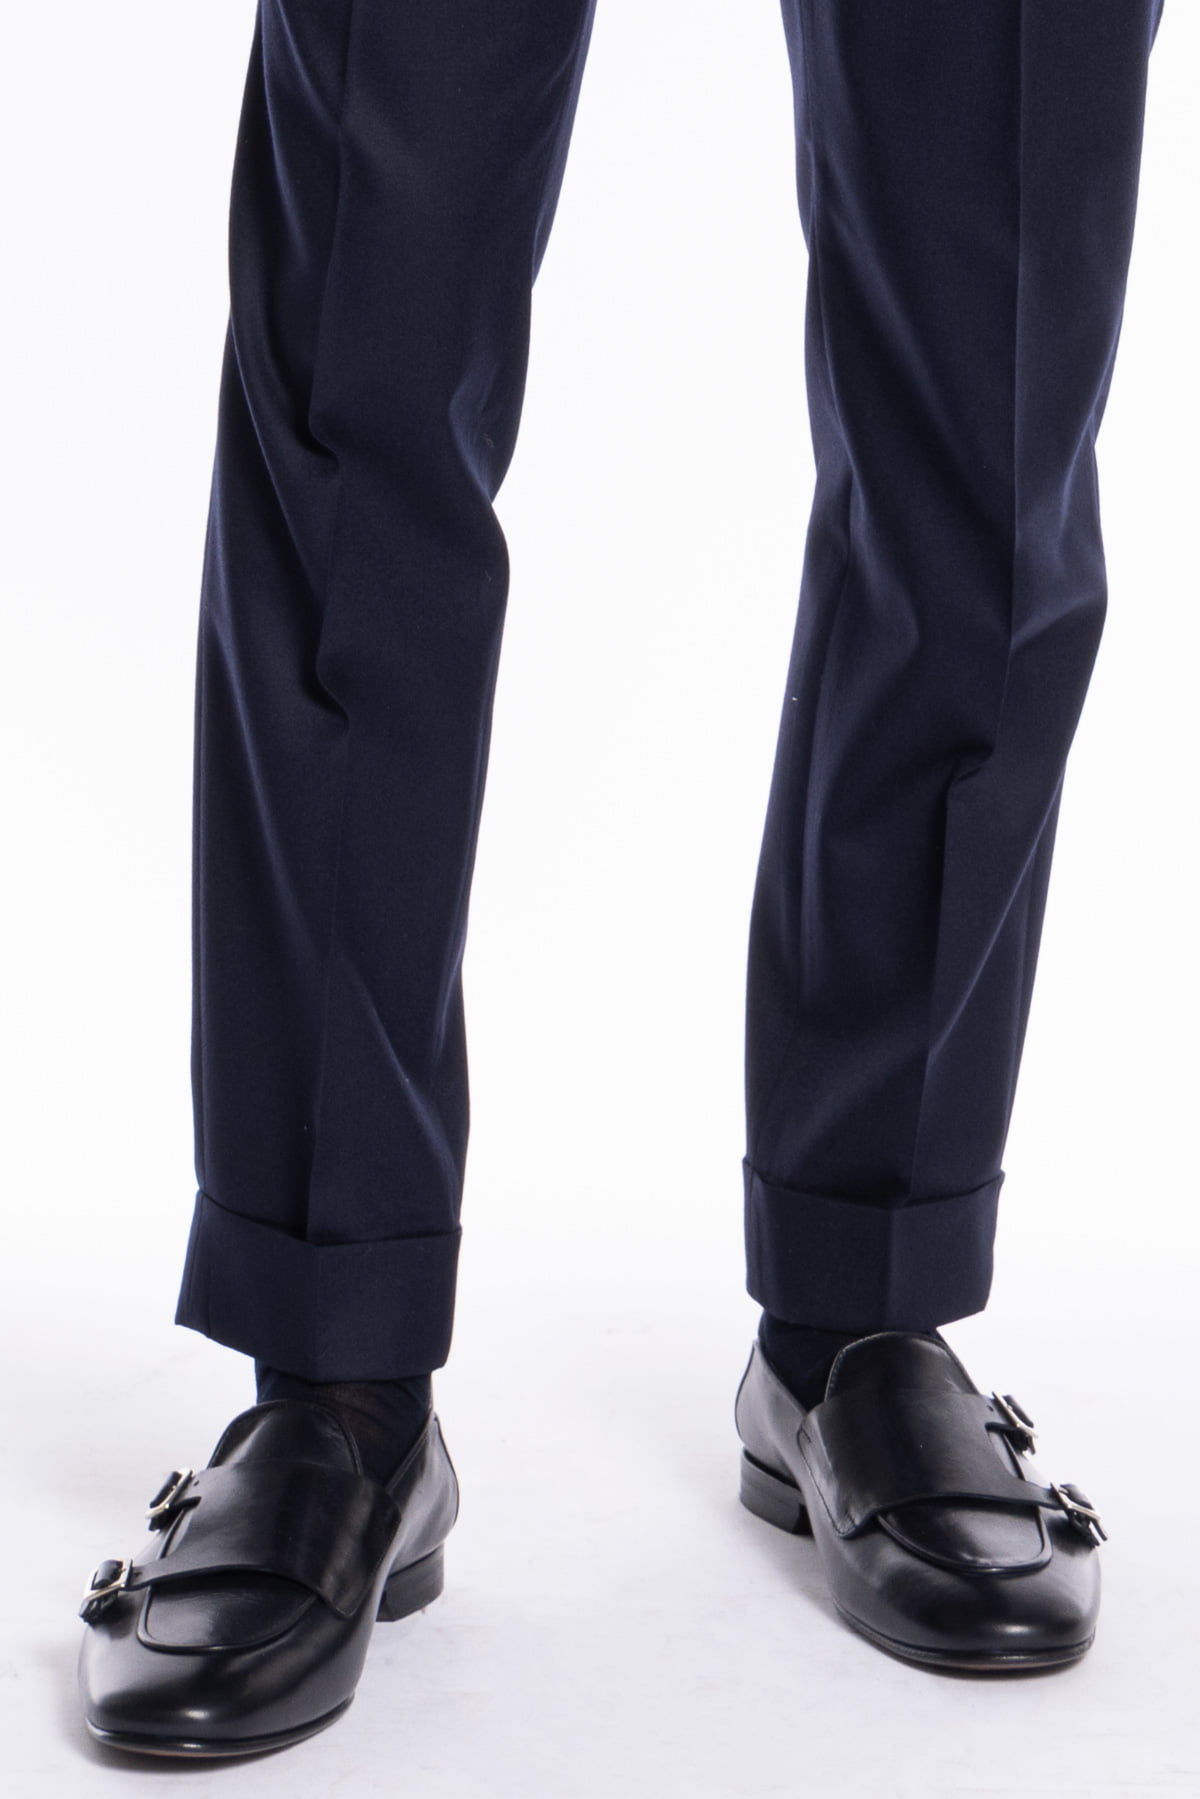 Pantalone uomo Navy blu chiusura prolungata doppia pinces in lana flanella al 100% Vitale Barberis Canonico